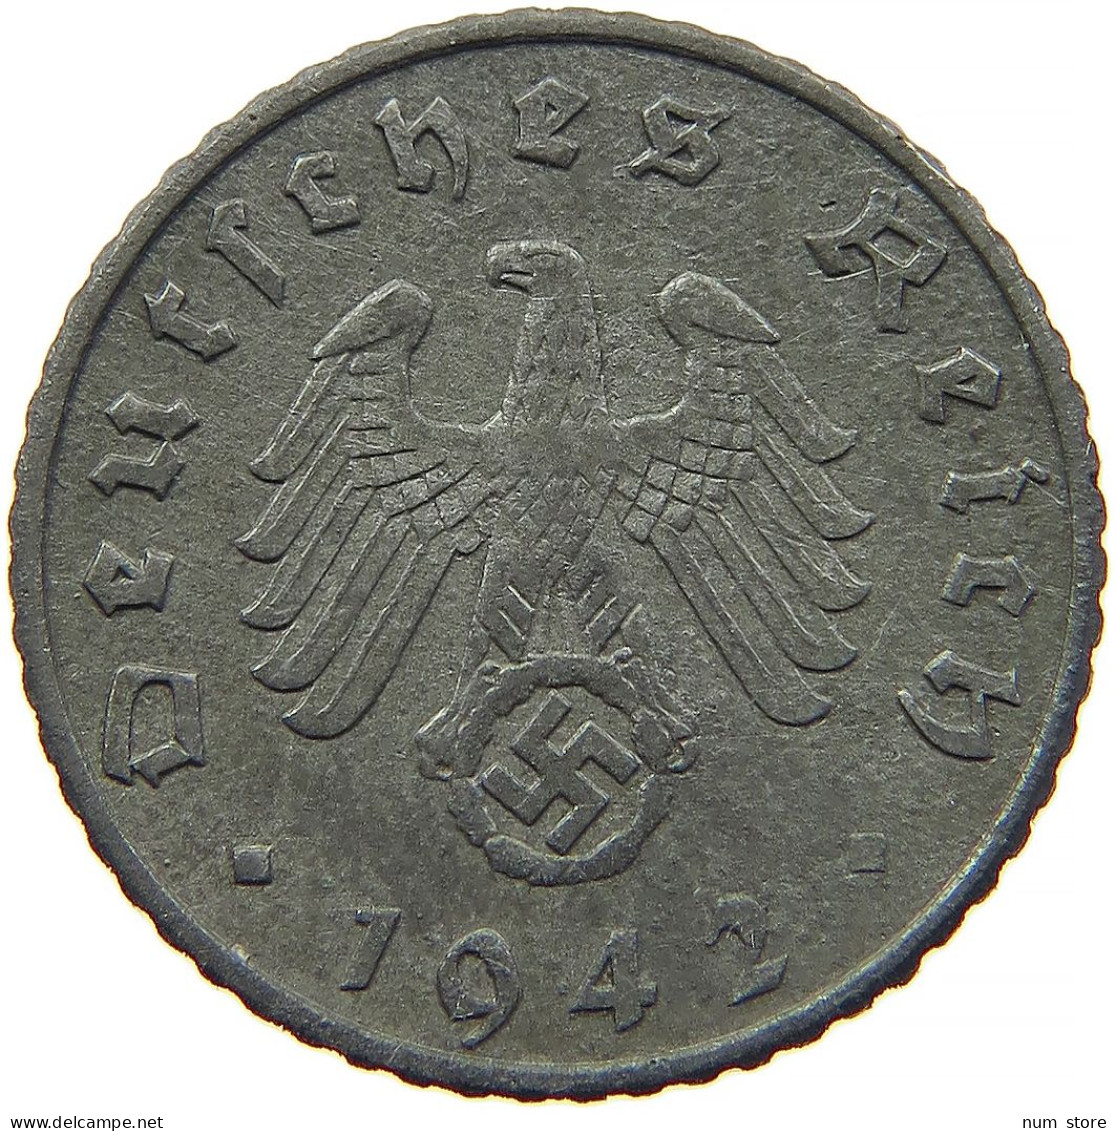 GERMANY 5 REICHSPFENNIG 1942 A #s091 0819 - 5 Reichspfennig